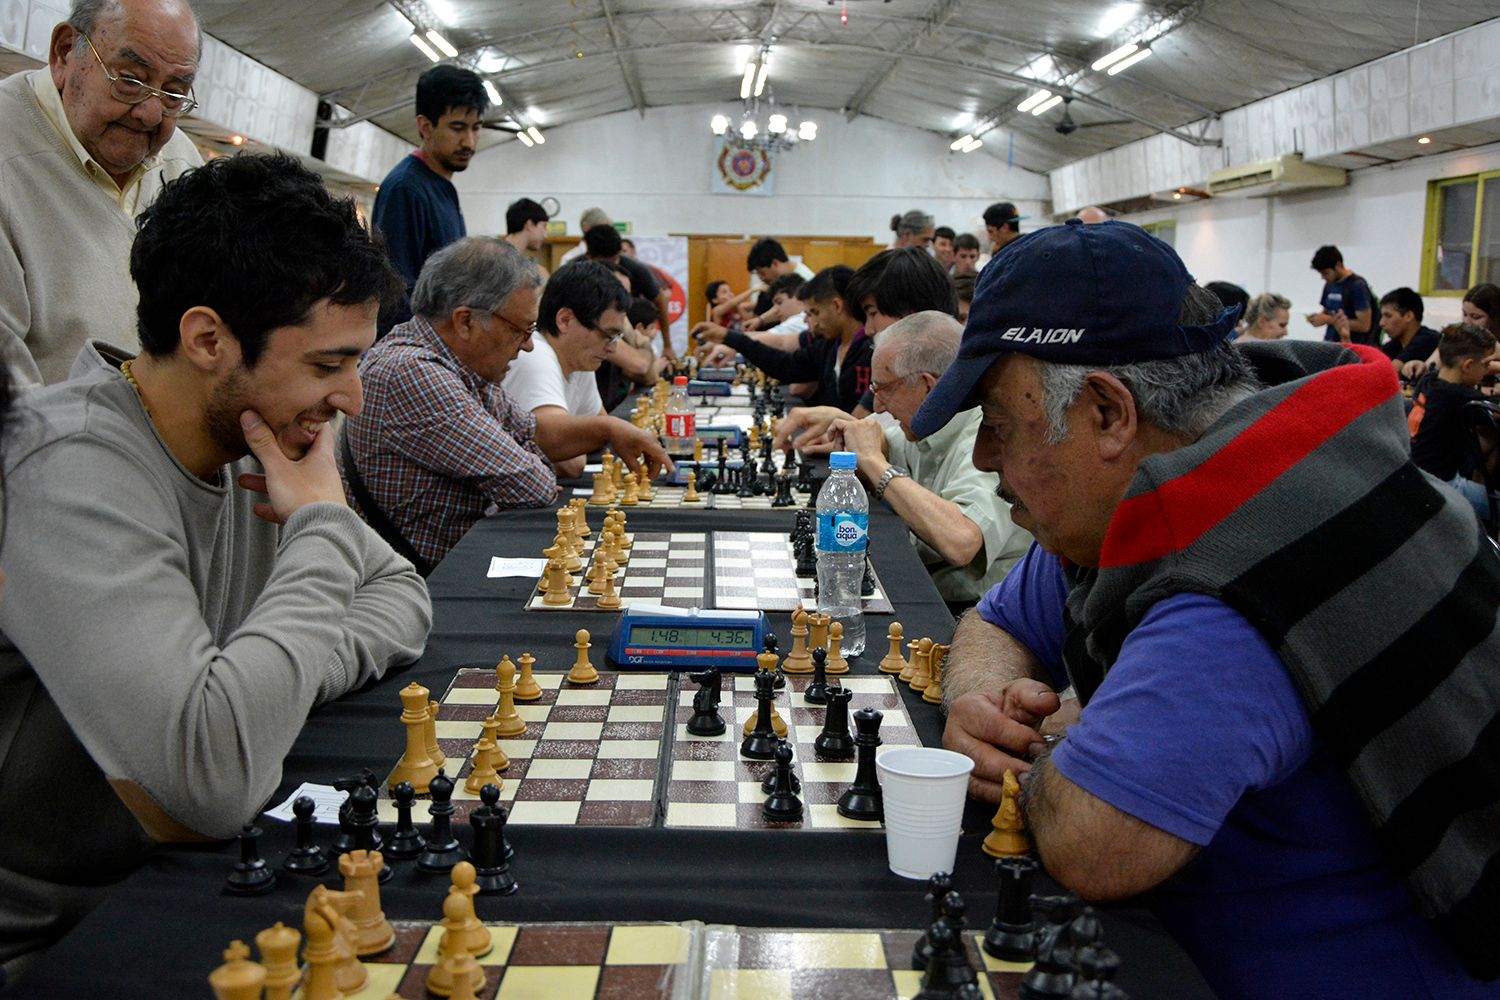 El "Circuito de ajedrez" cerró el año con éxito en Tigre 